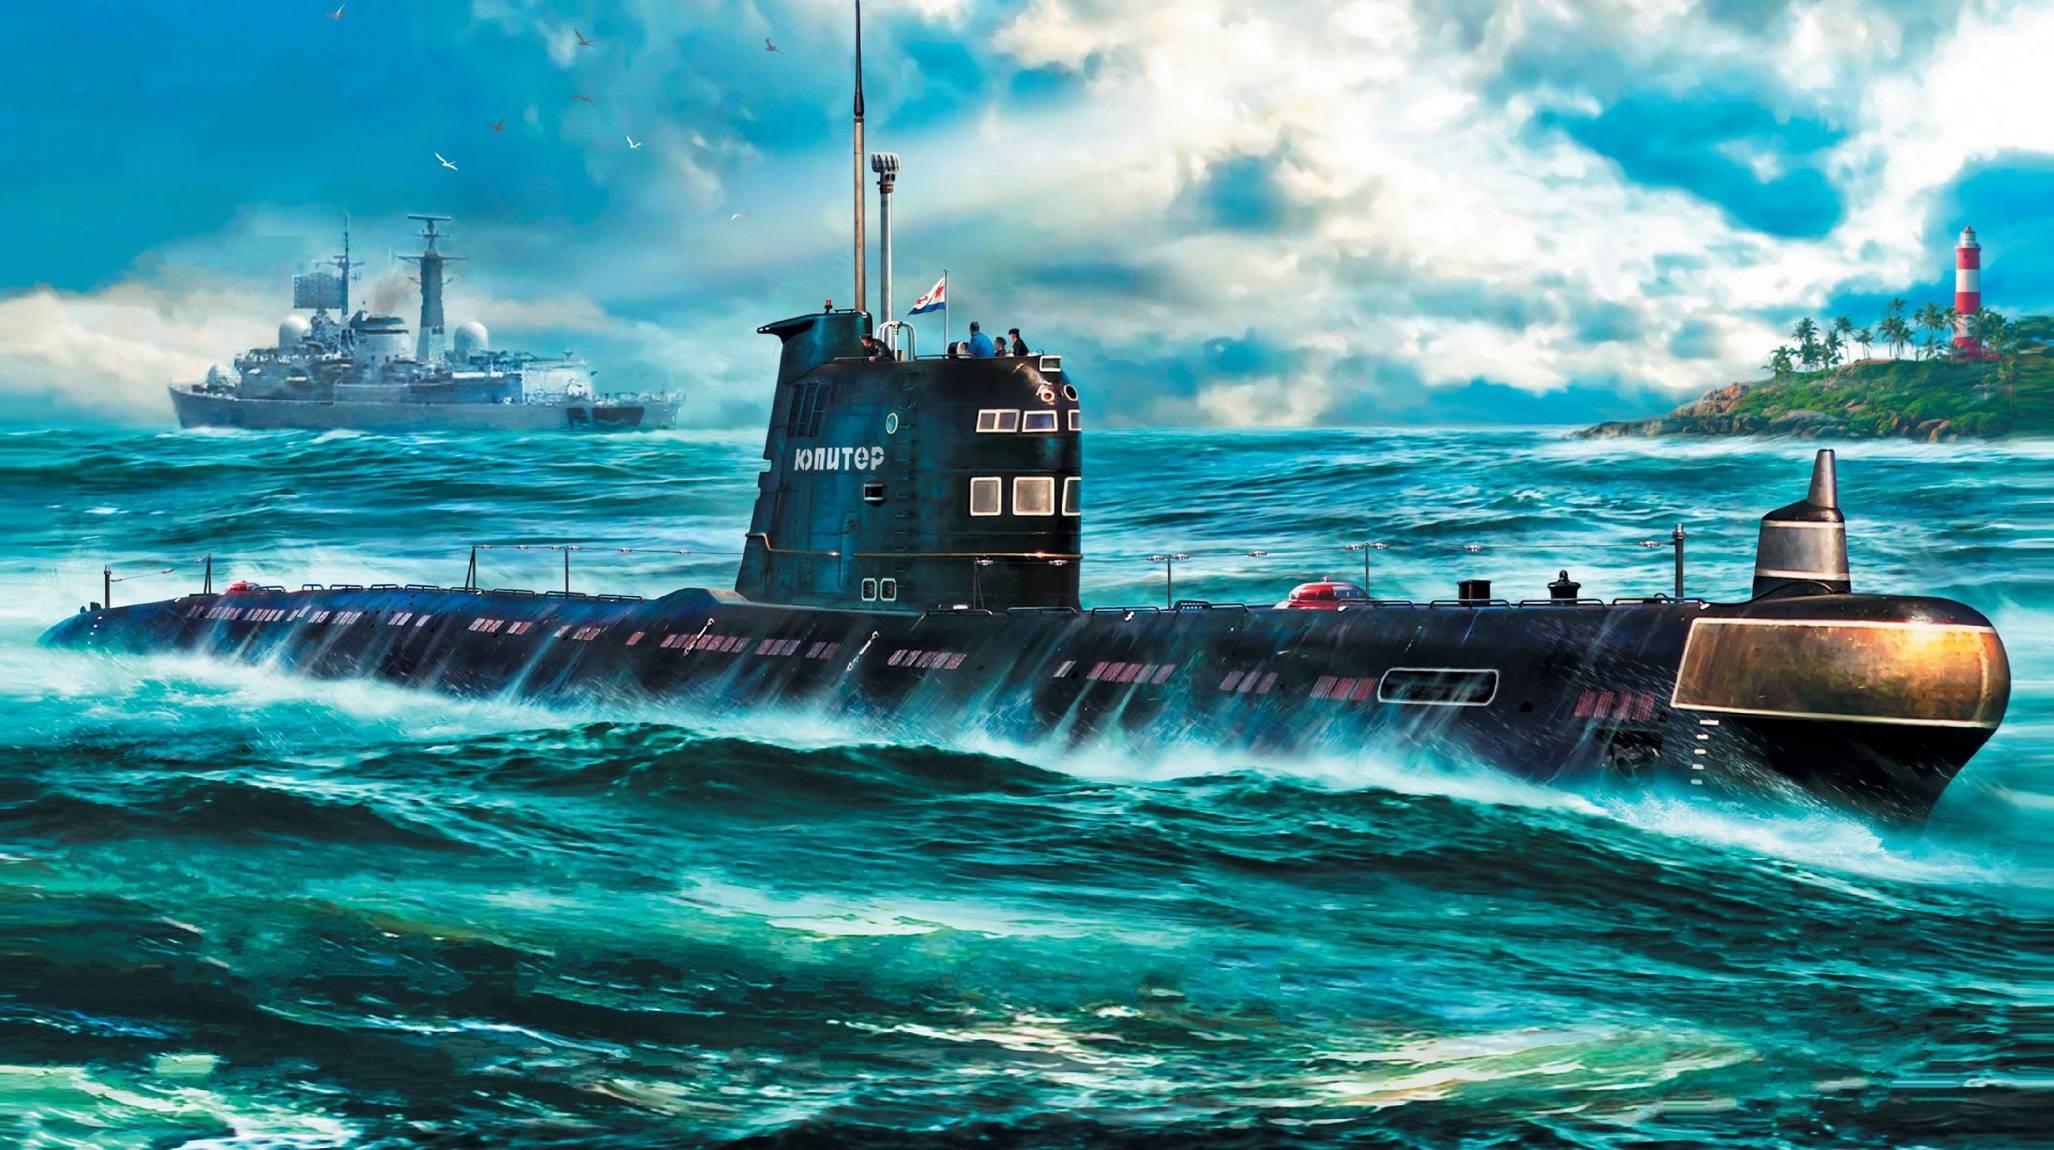 Проект 641б «сом» — дизель-электрическая подводная лодка